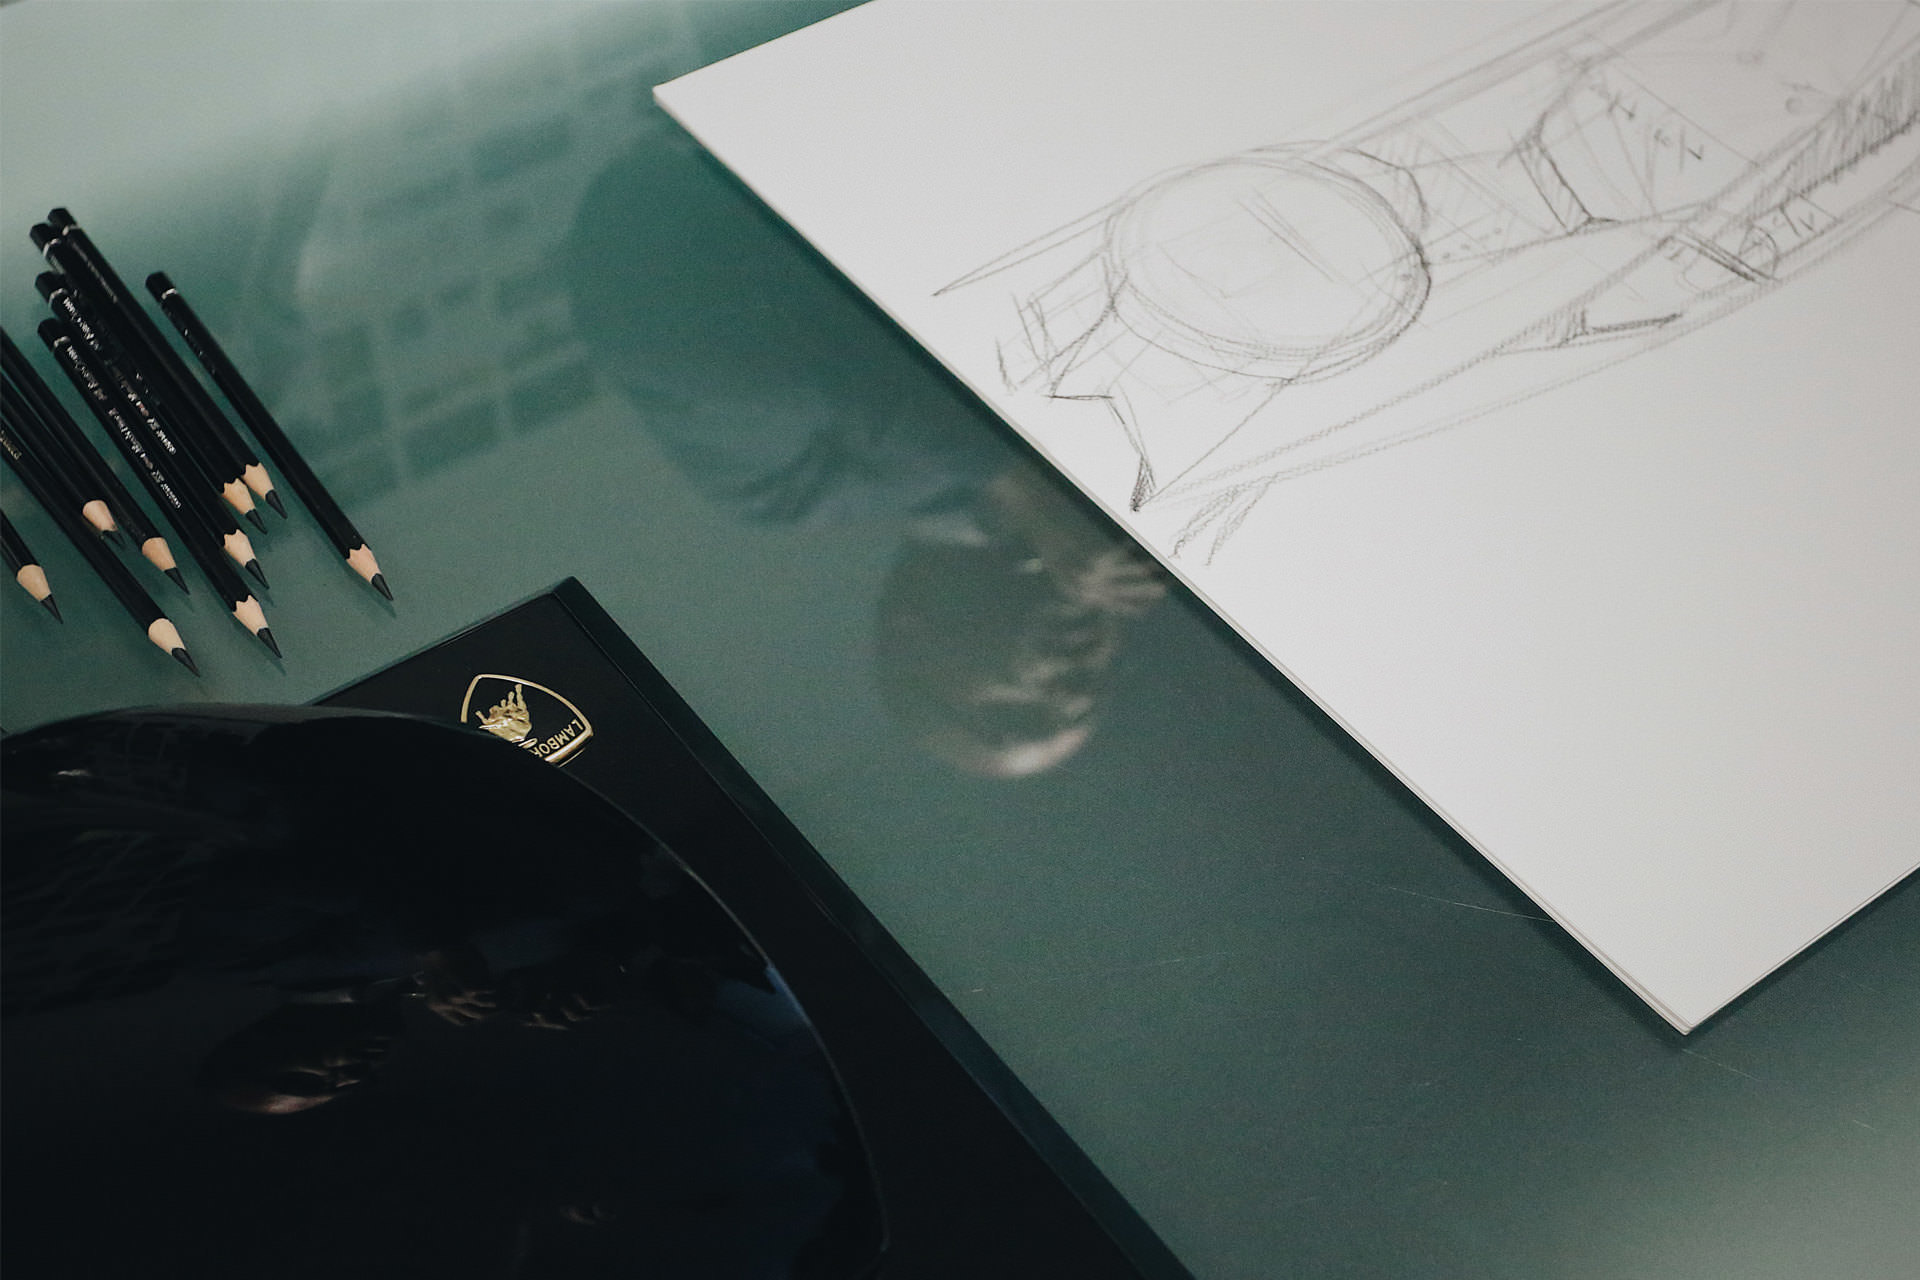 Filippo Perini - Lamborghini - Sketching Interview